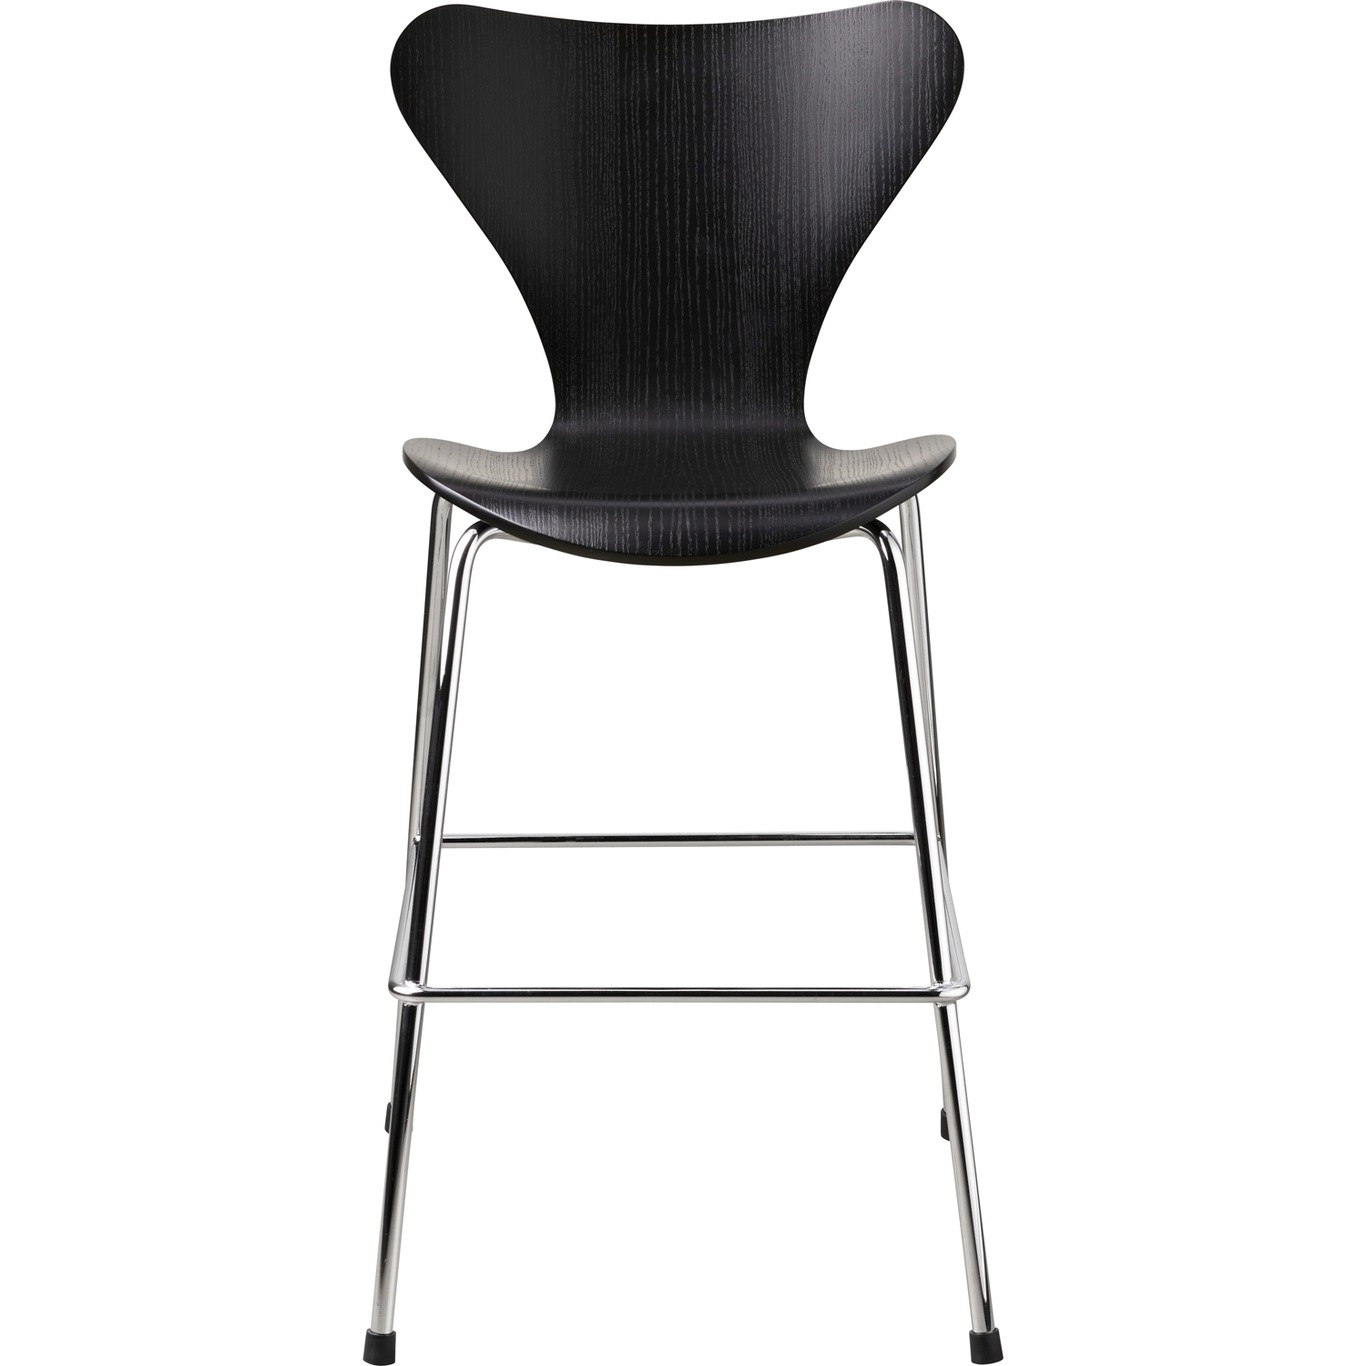 Series 7 Junior Chair, Black / Chrome